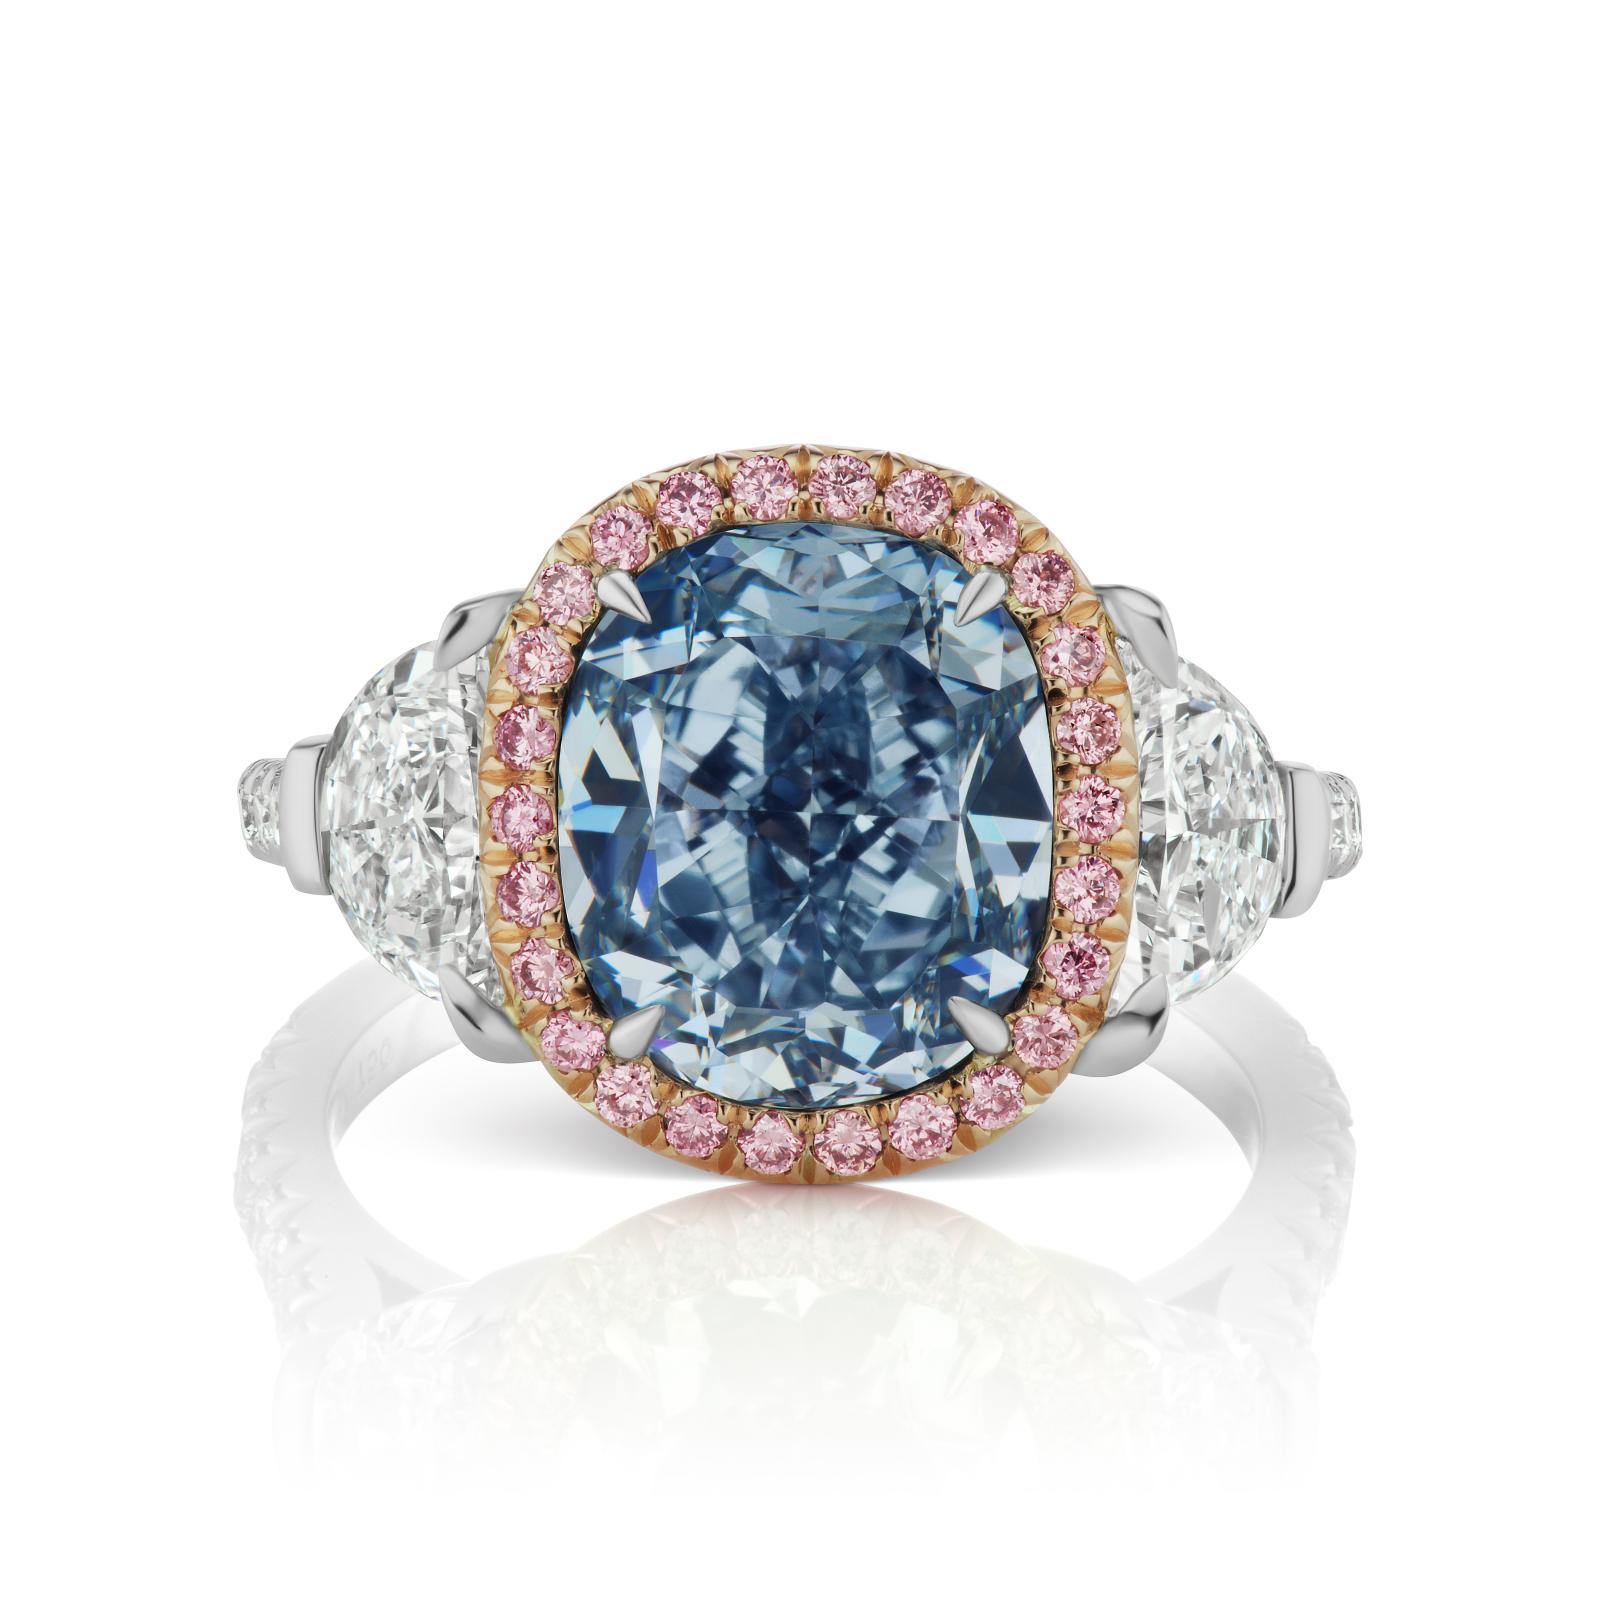 L. J. West, bague diamant ovale, 3,04 ct, couleur fancy intense blue VS2, sertie de deux diamants demi-lune et d’un entourage diamants roses, présenté